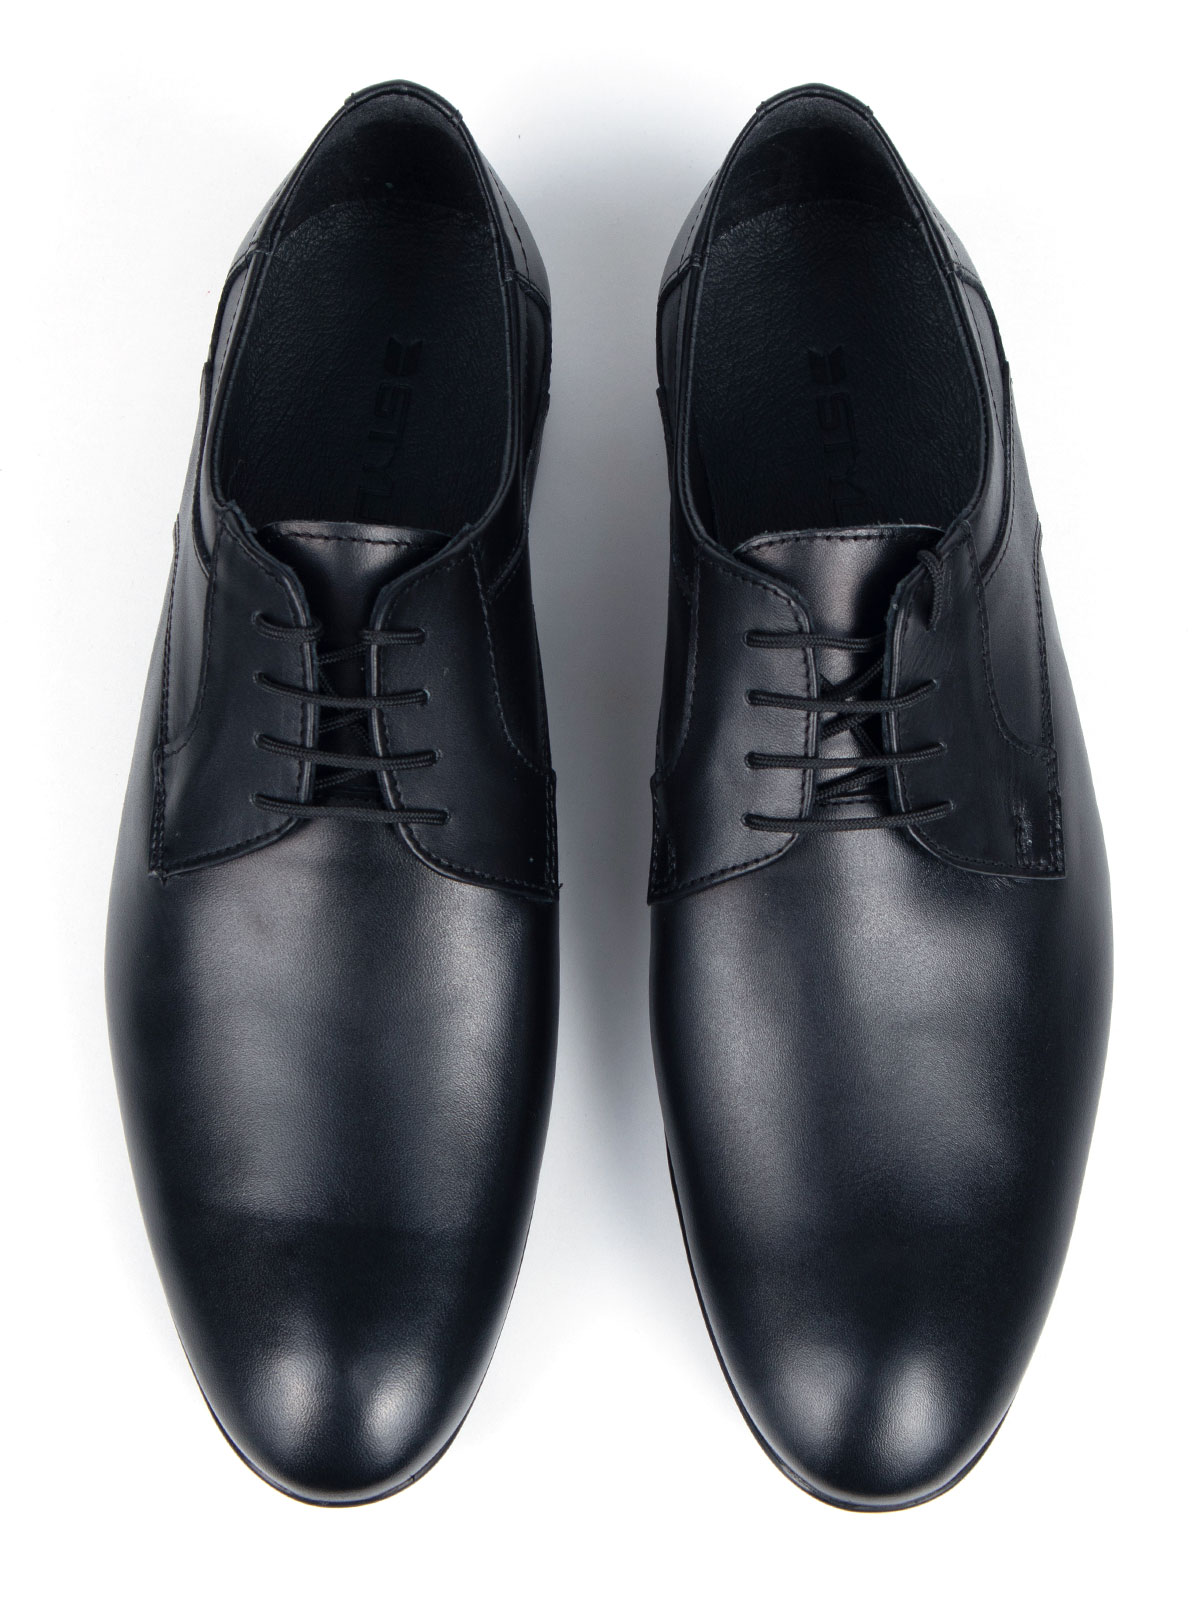  μαύρα κομψά παπούτσια από λείο δέρμα  - 81074 - € 77.61 img4